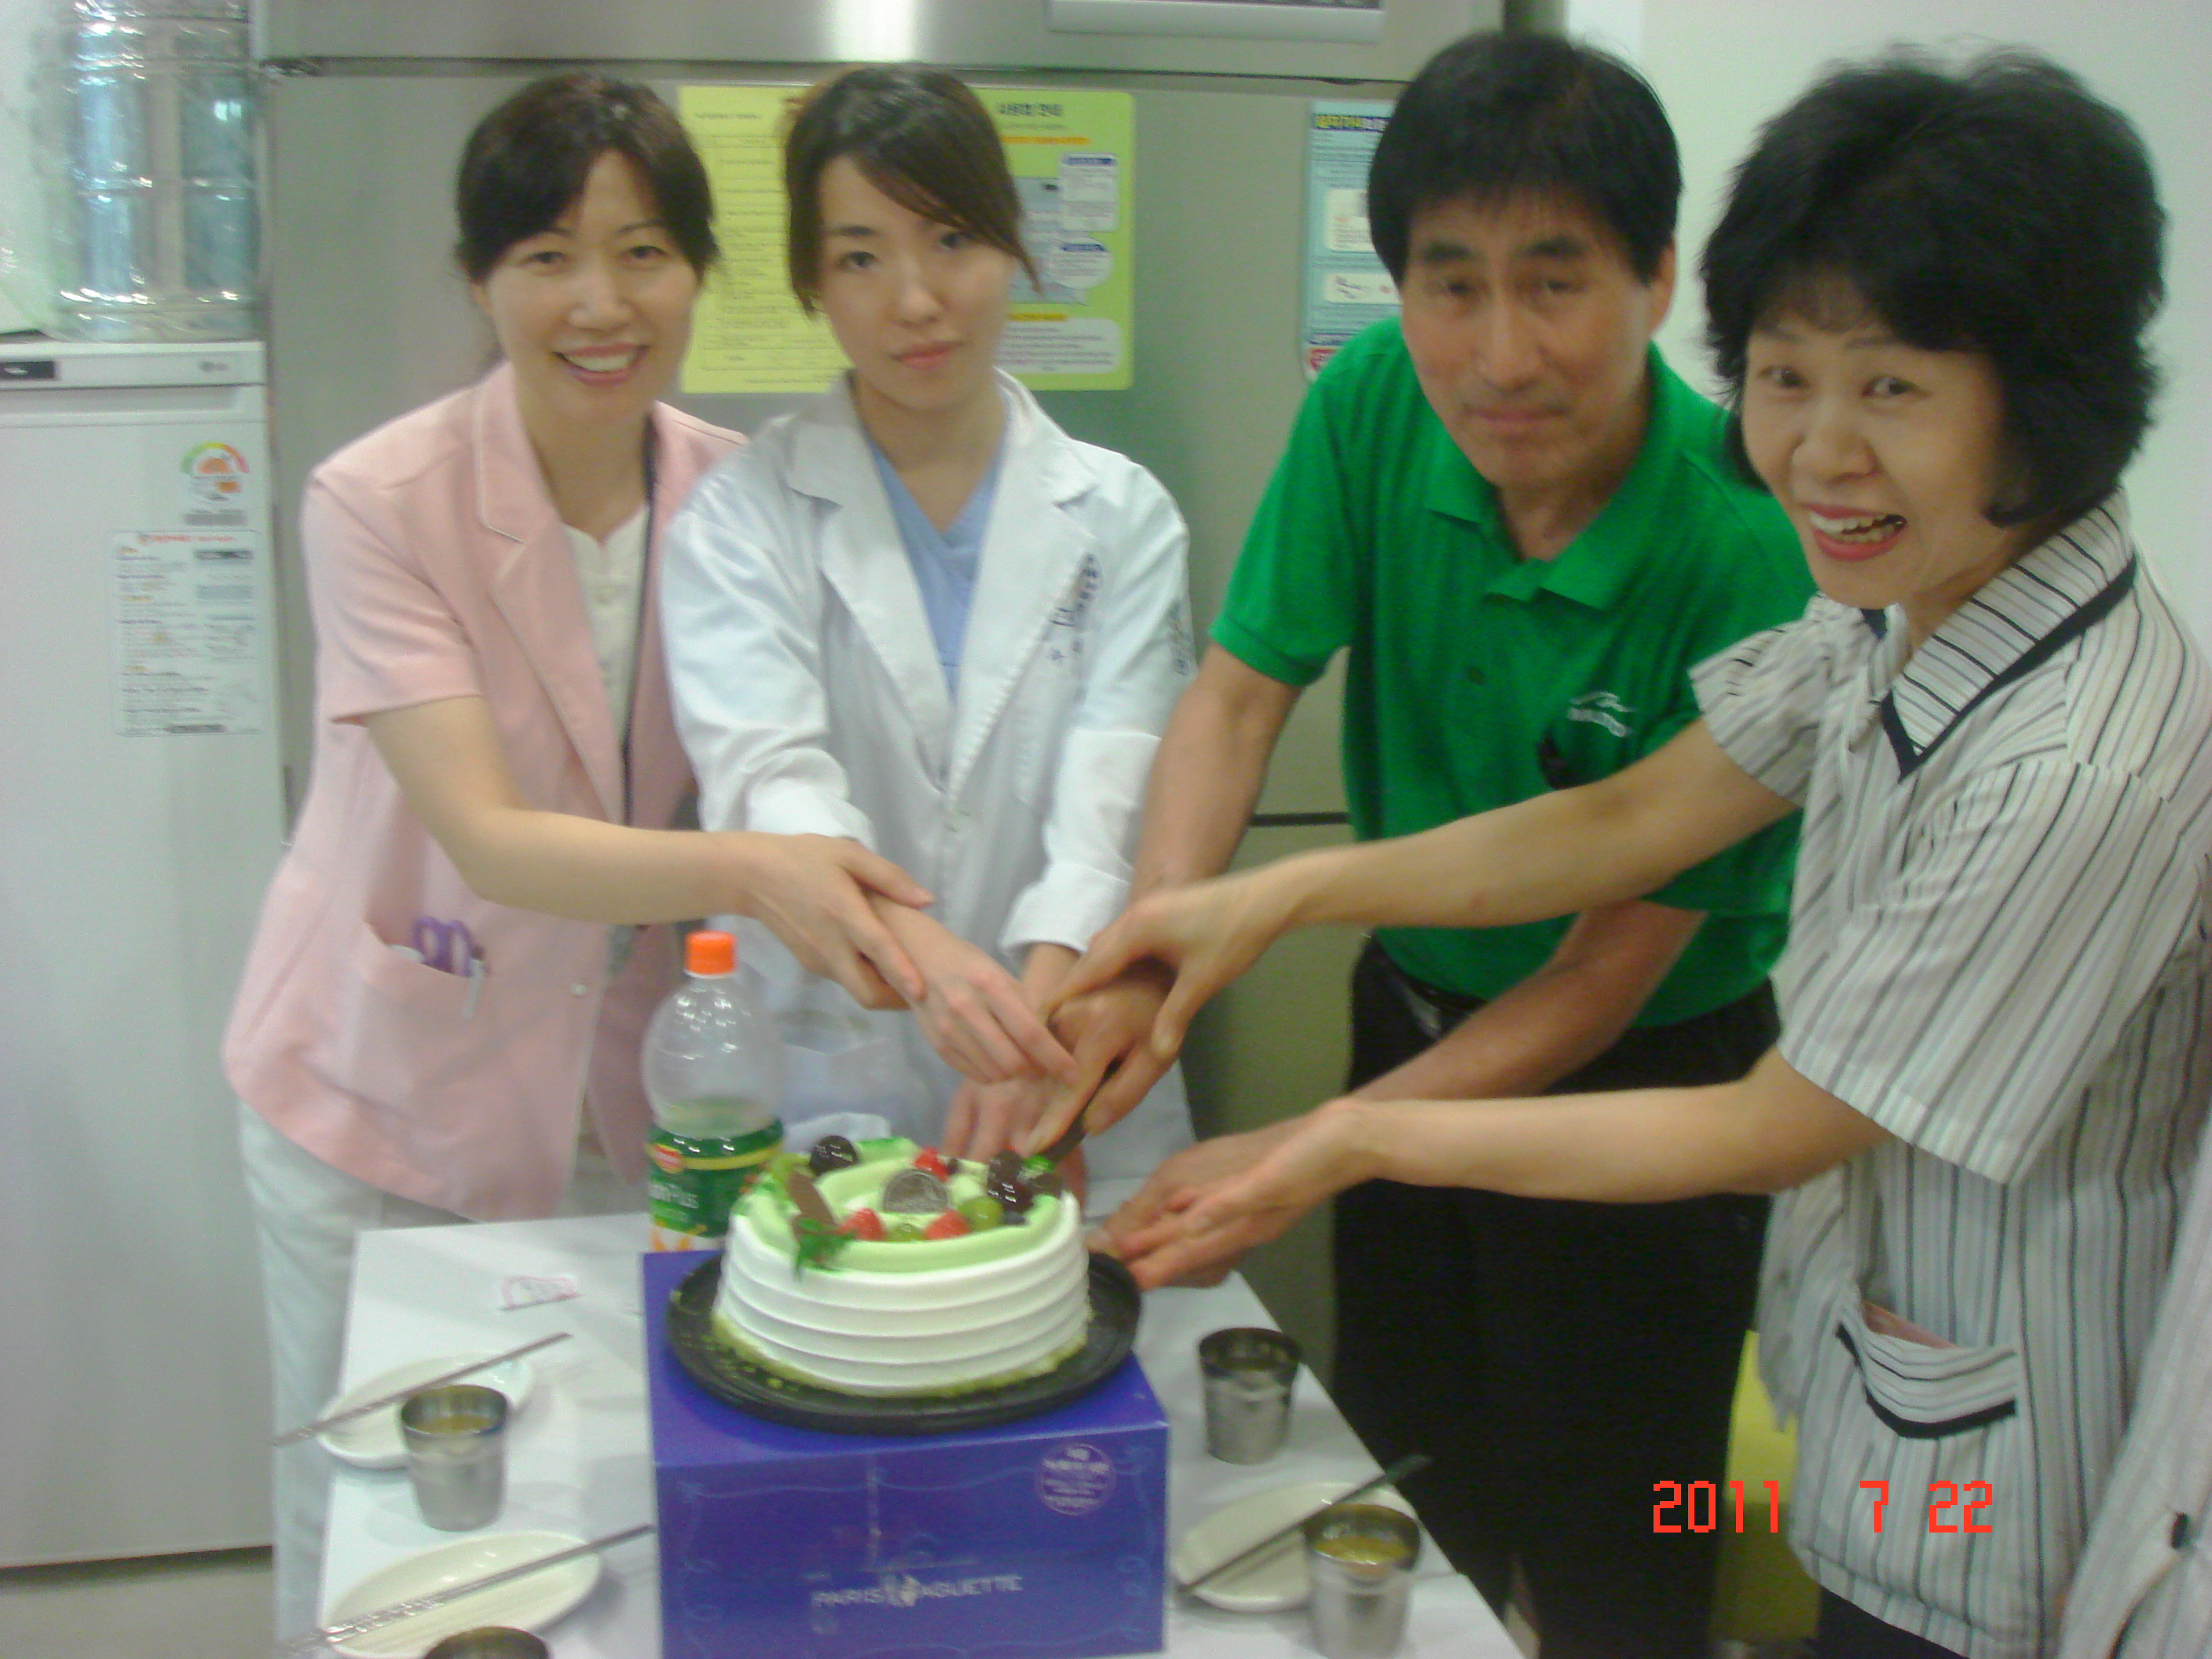 2011년 7월 22일 - 강북점 생일자 파티 게시글의 5번째 첨부파일입니다.